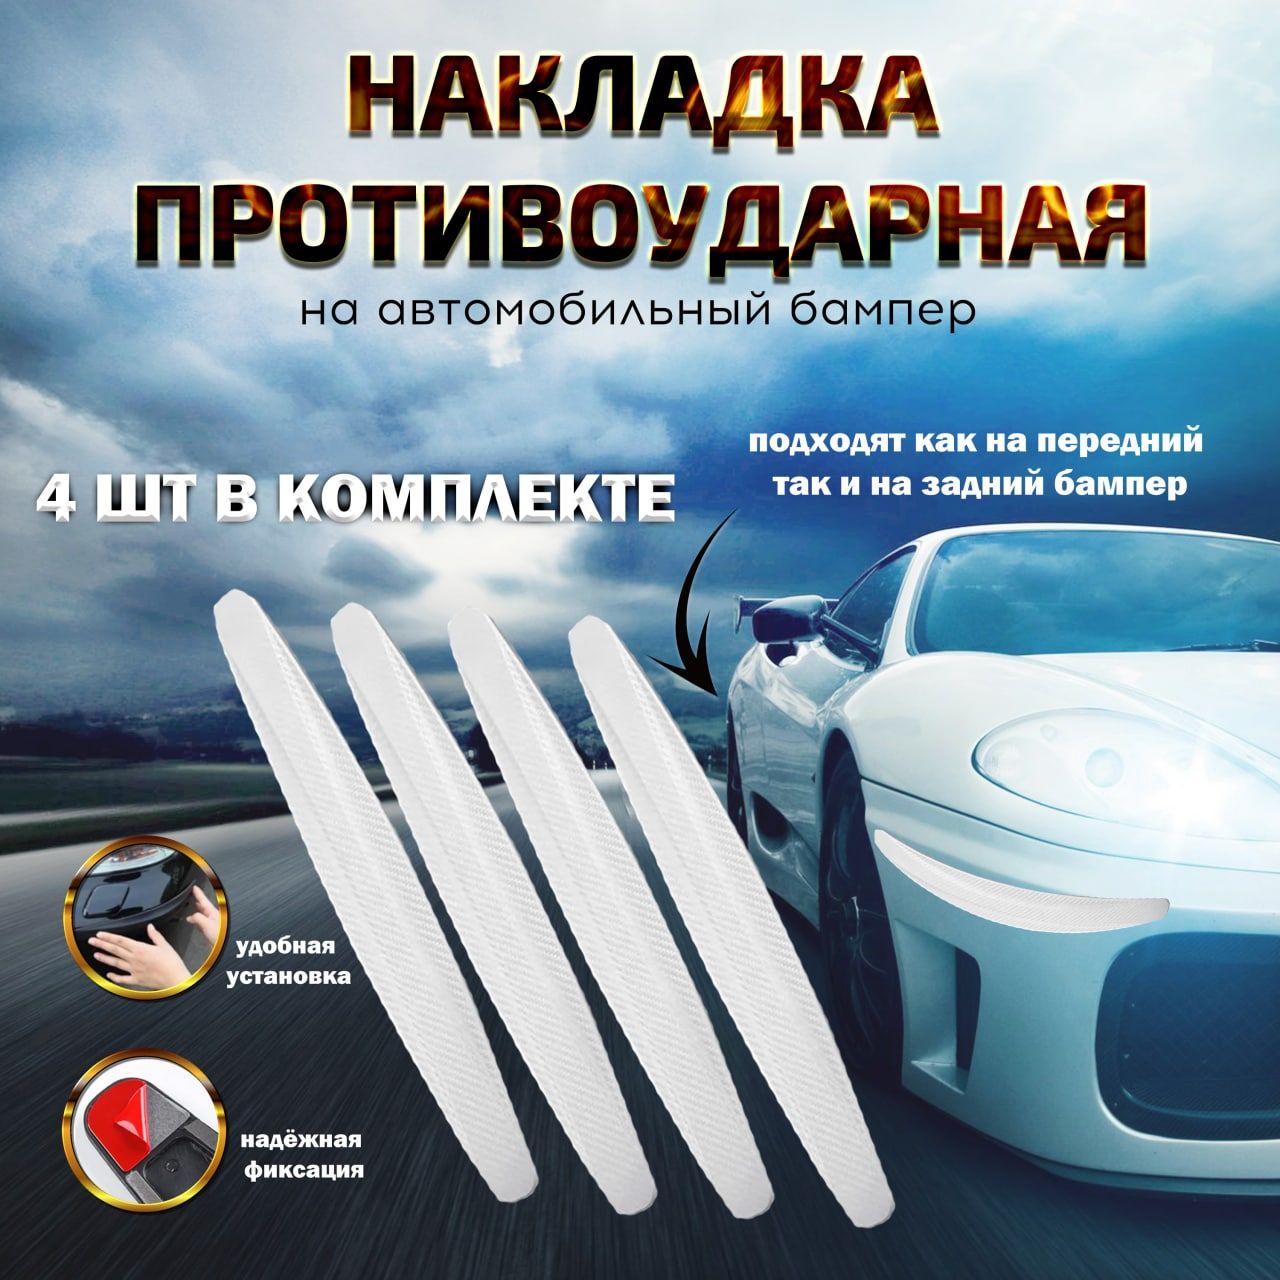 Накладки на бампер автомобиля - купить в интернет магазине эталон62.рф